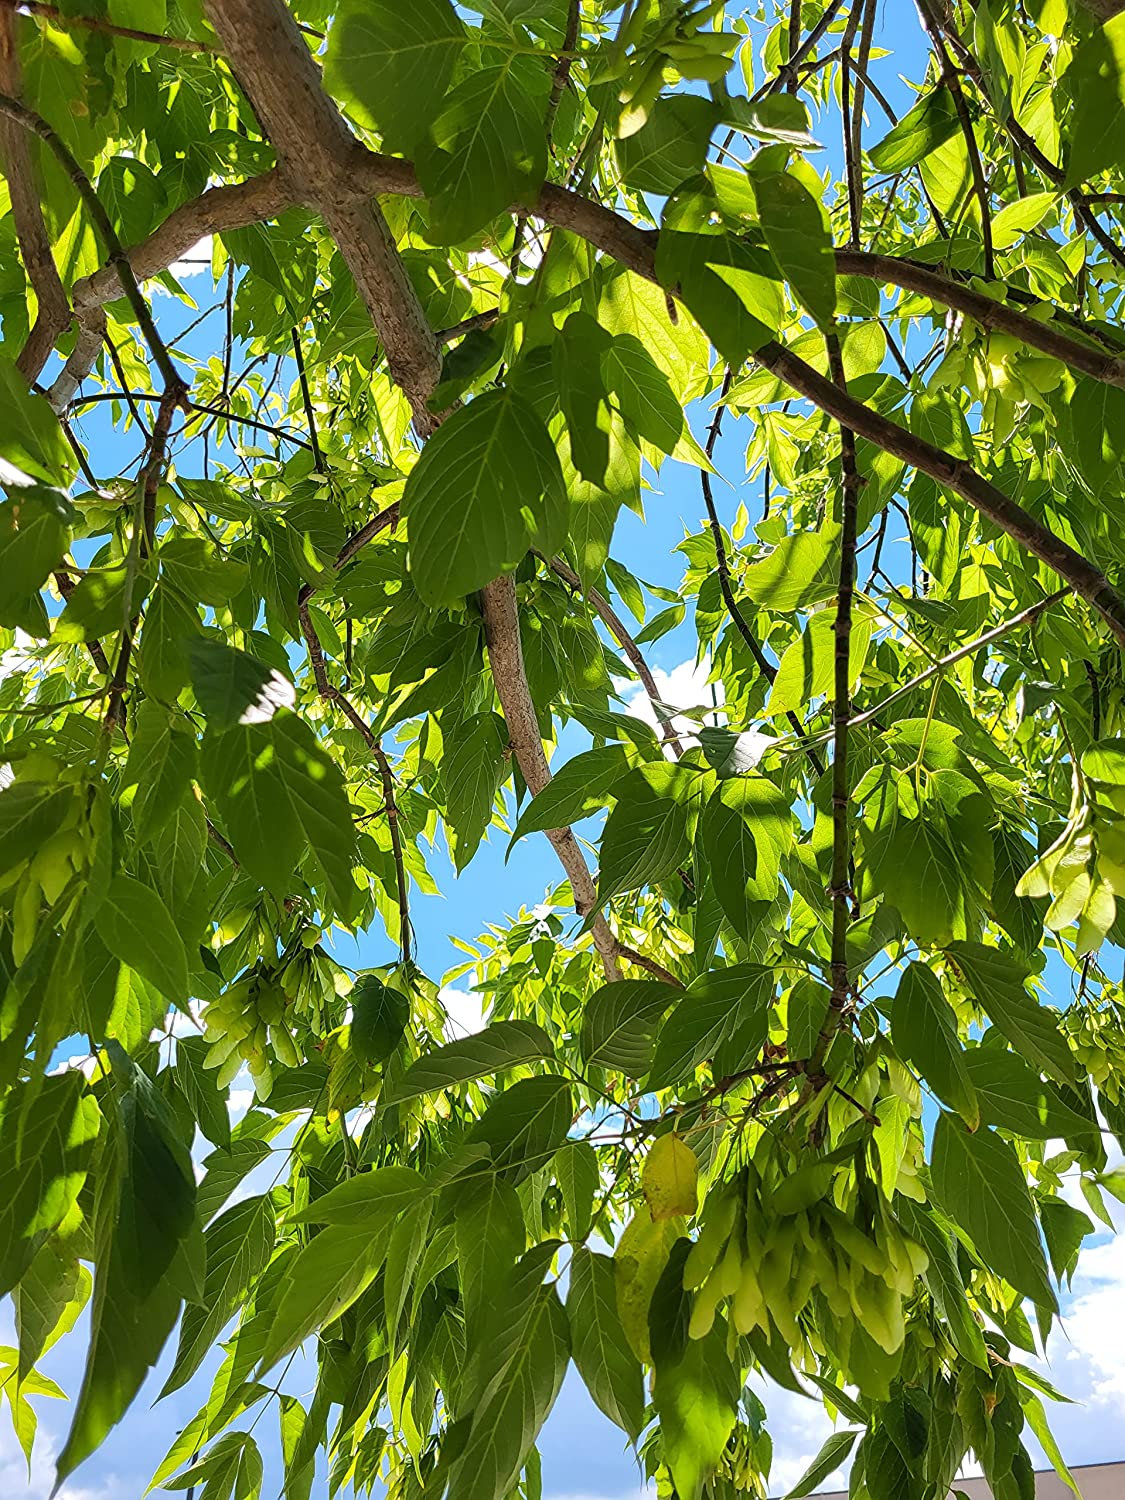 Hundredfold Box Elder Maple 20 Seeds - Acer negundo Ash-leaved Maple, Ashleaf Maple, Red River Maple Manitoba Maple Canada Native Tree